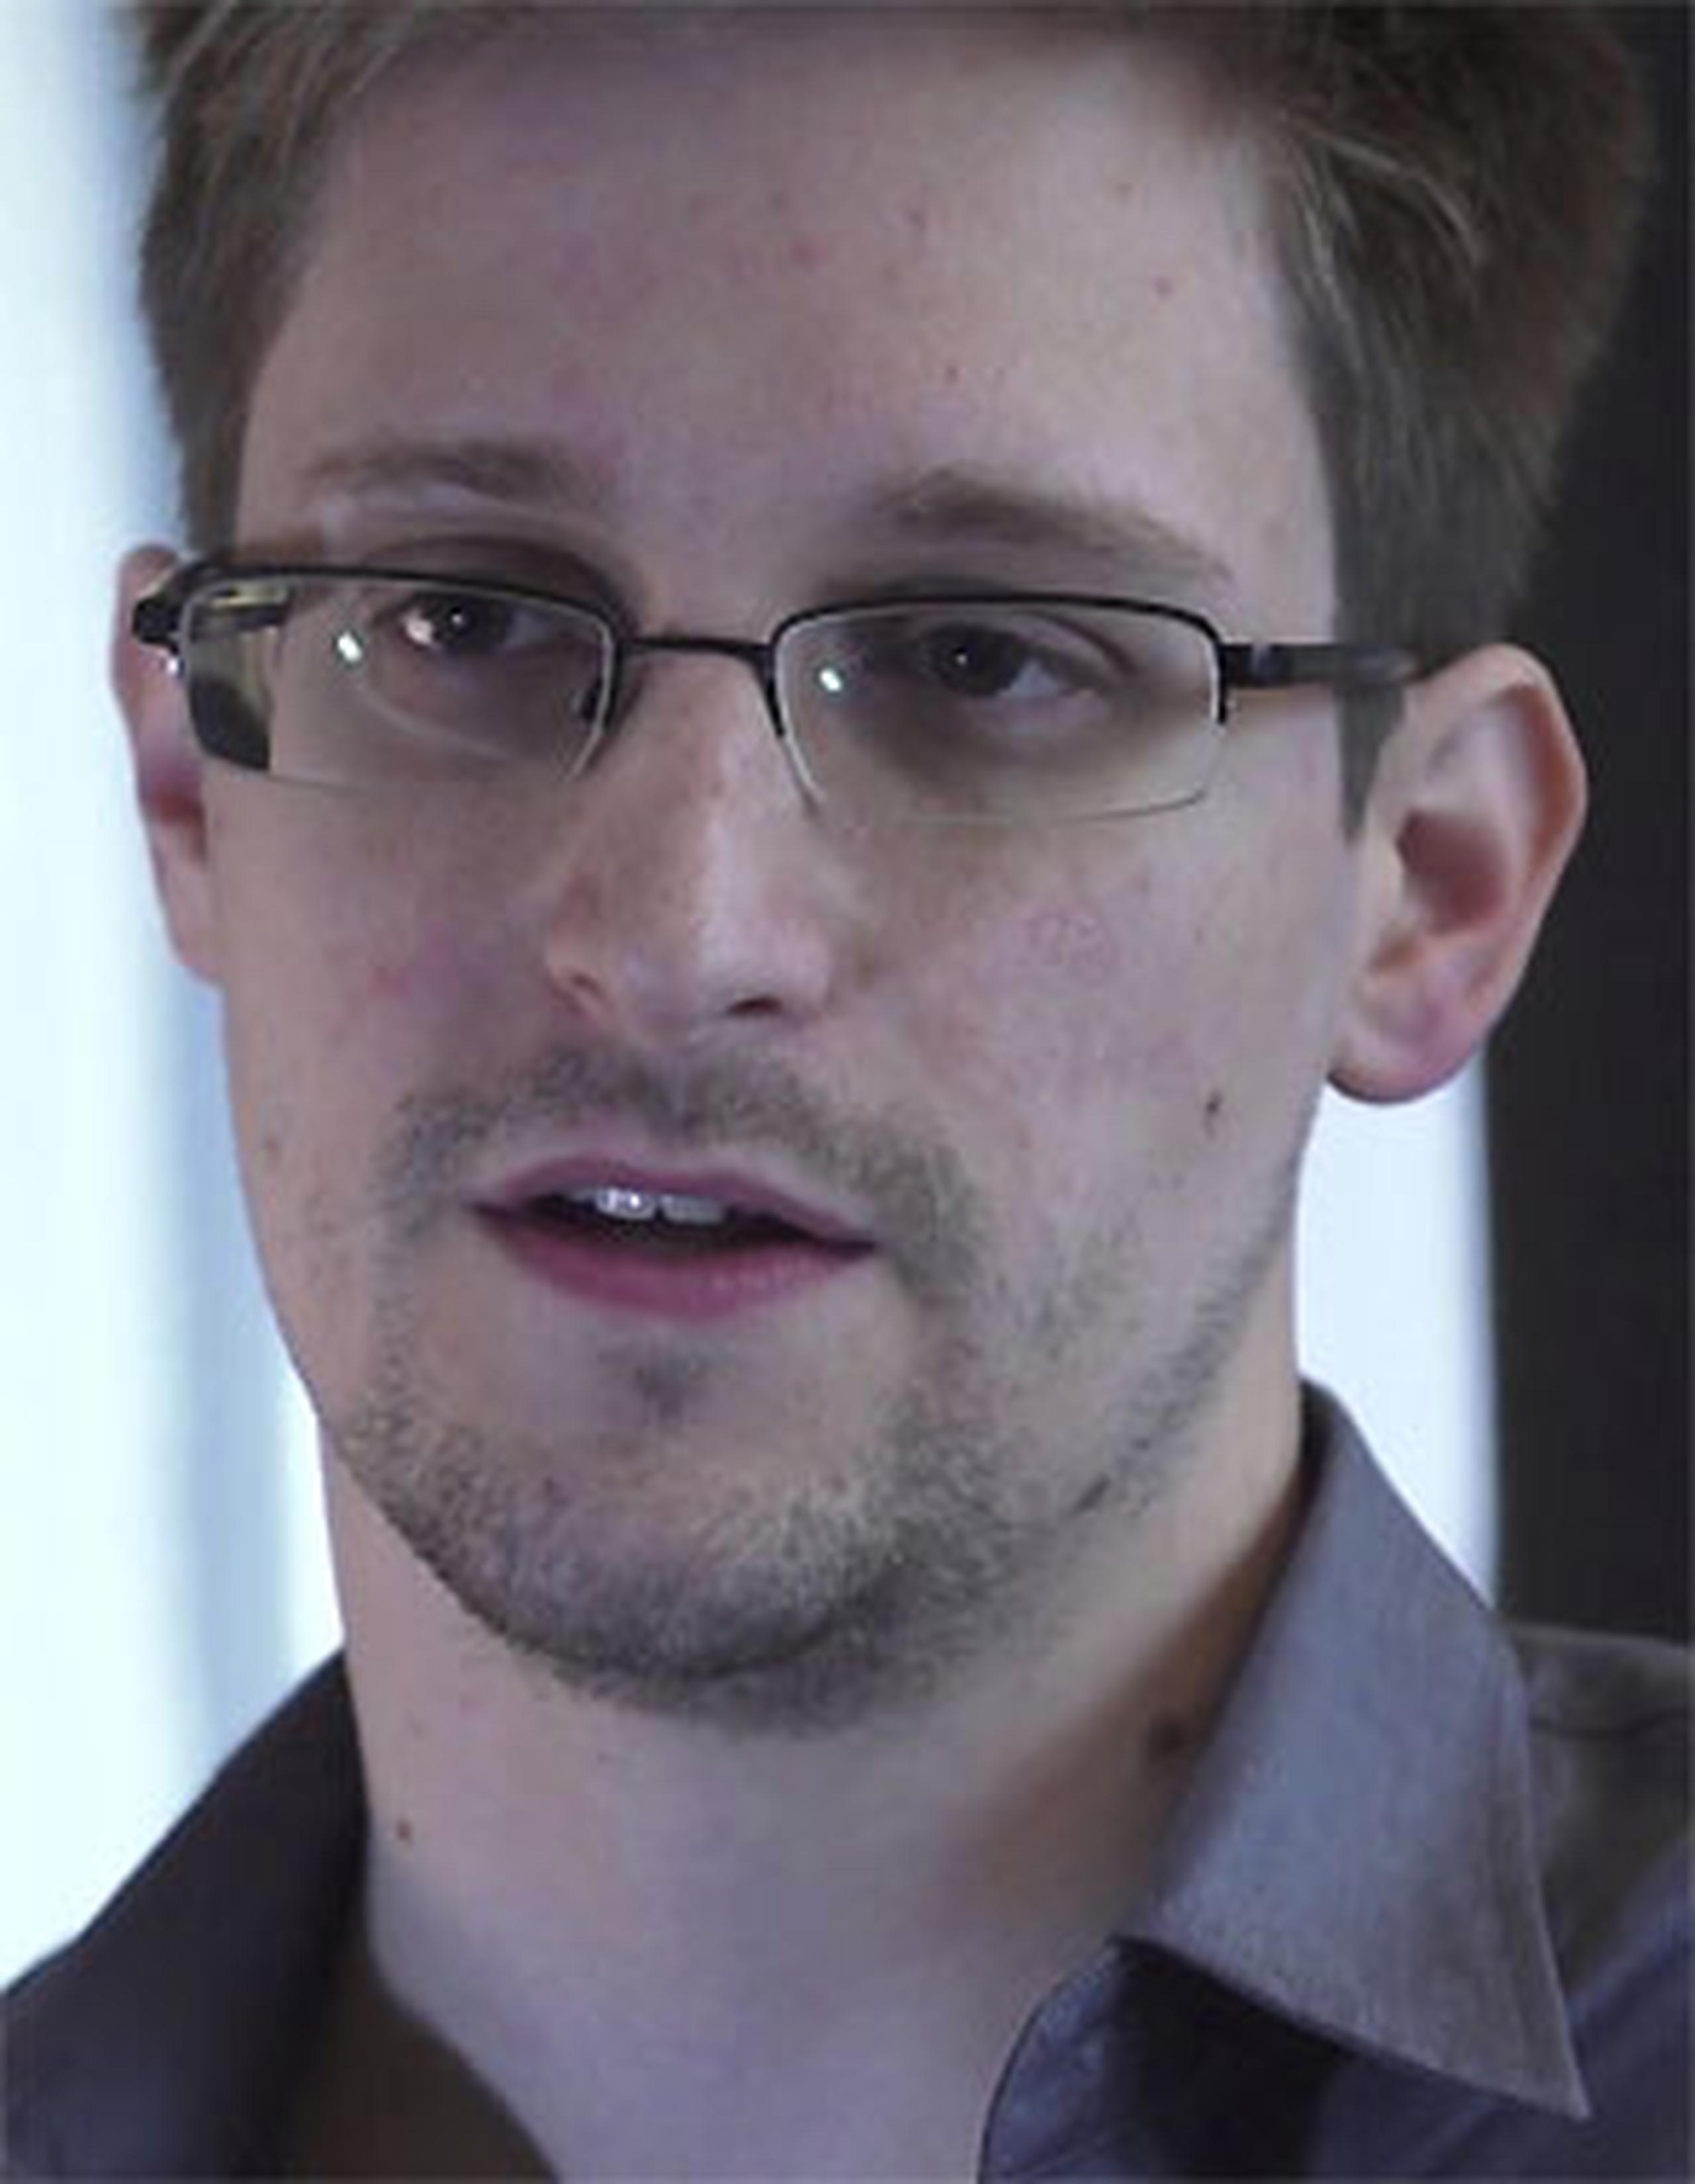 La única petición de asilo que se conoce oficialmente es la que Snowden ha hecho a Ecuador, país que está evaluando su caso. (Archivo)